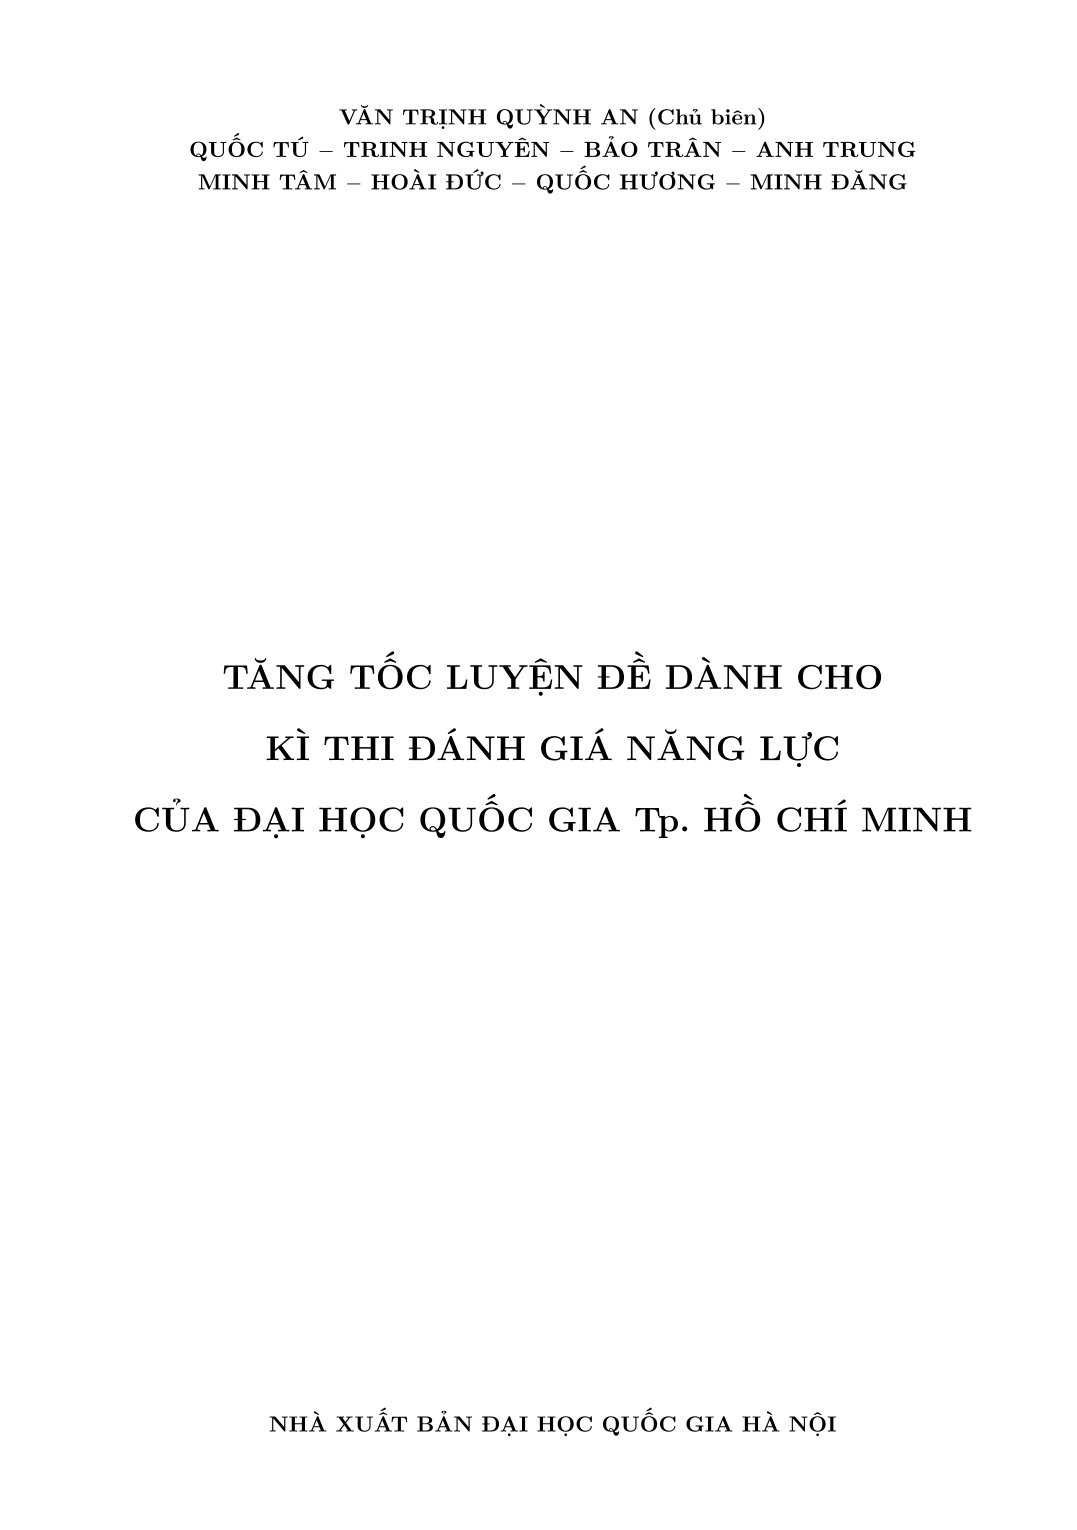 TĂNG TỐC LUYỆN ĐỀ THI ĐÁNH GIÁ NĂNG LỰC (Theo cấu trúc đề thi của Đại học Quốc gia TP. Hồ Chí Minh)